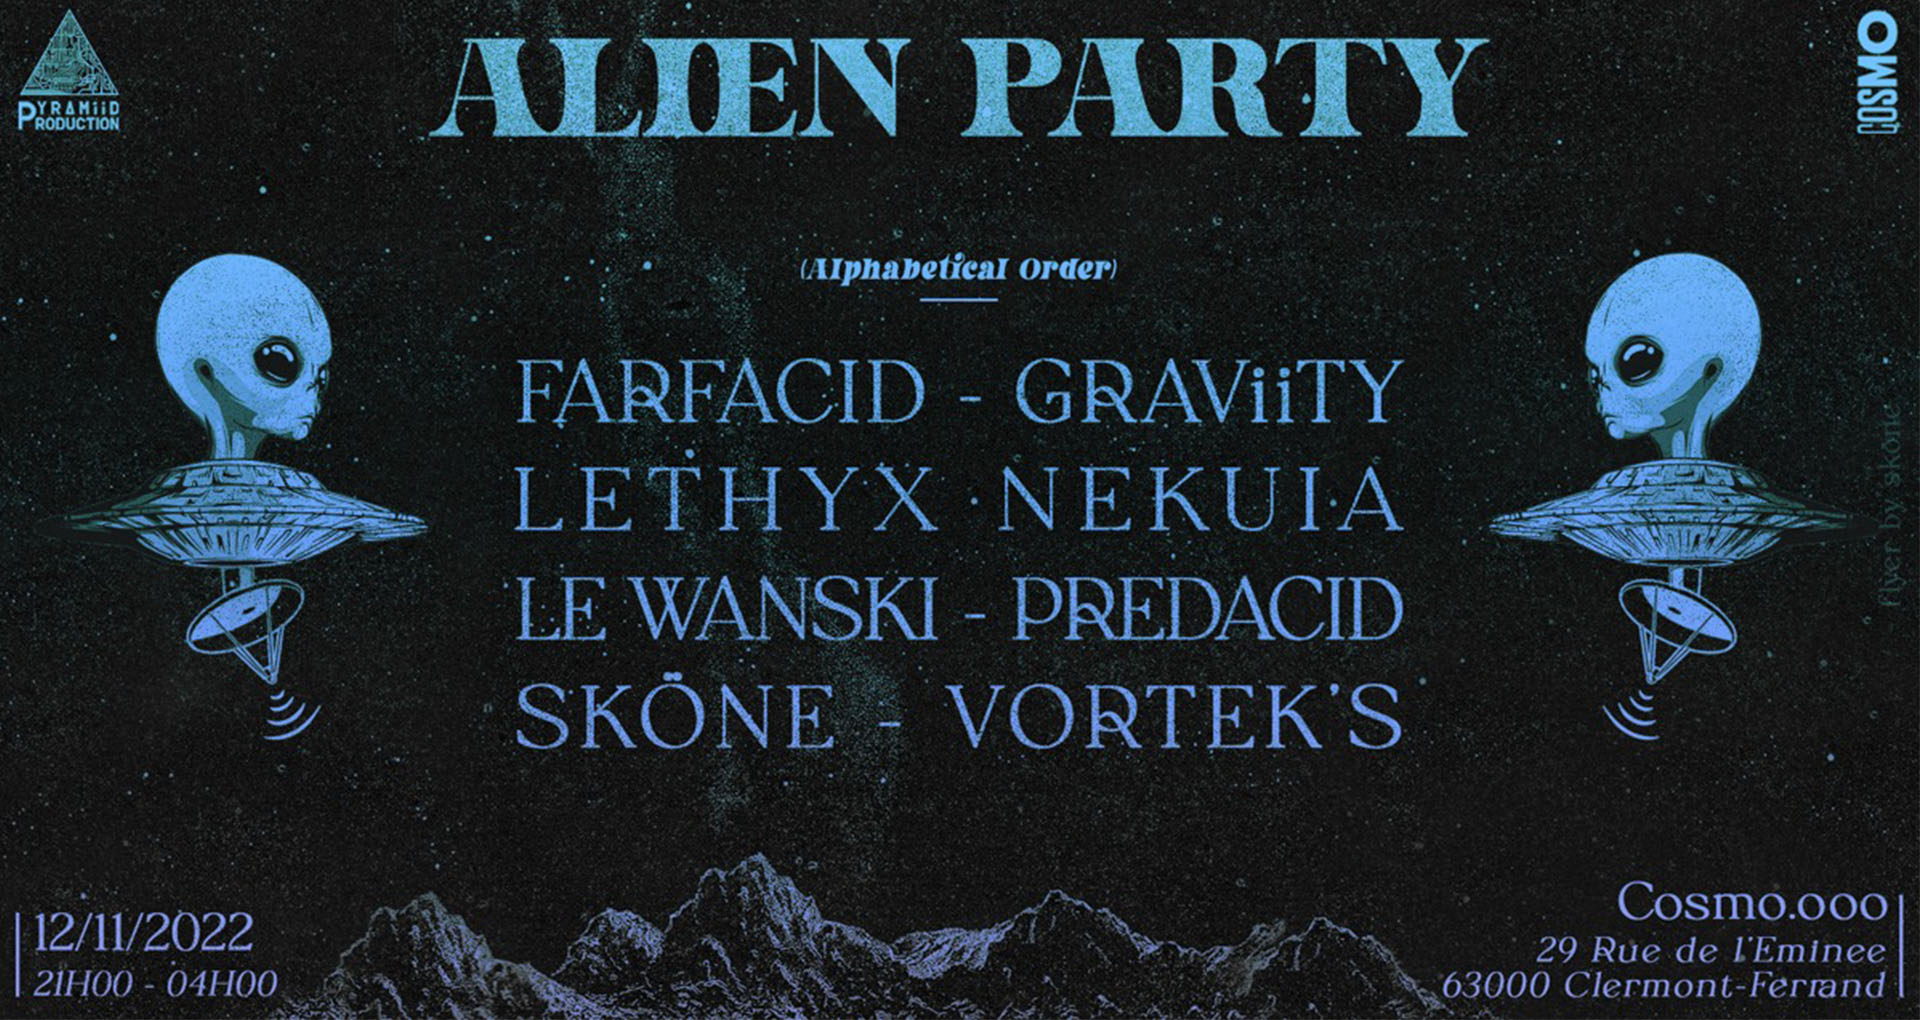 Affiche de l'Alien Party